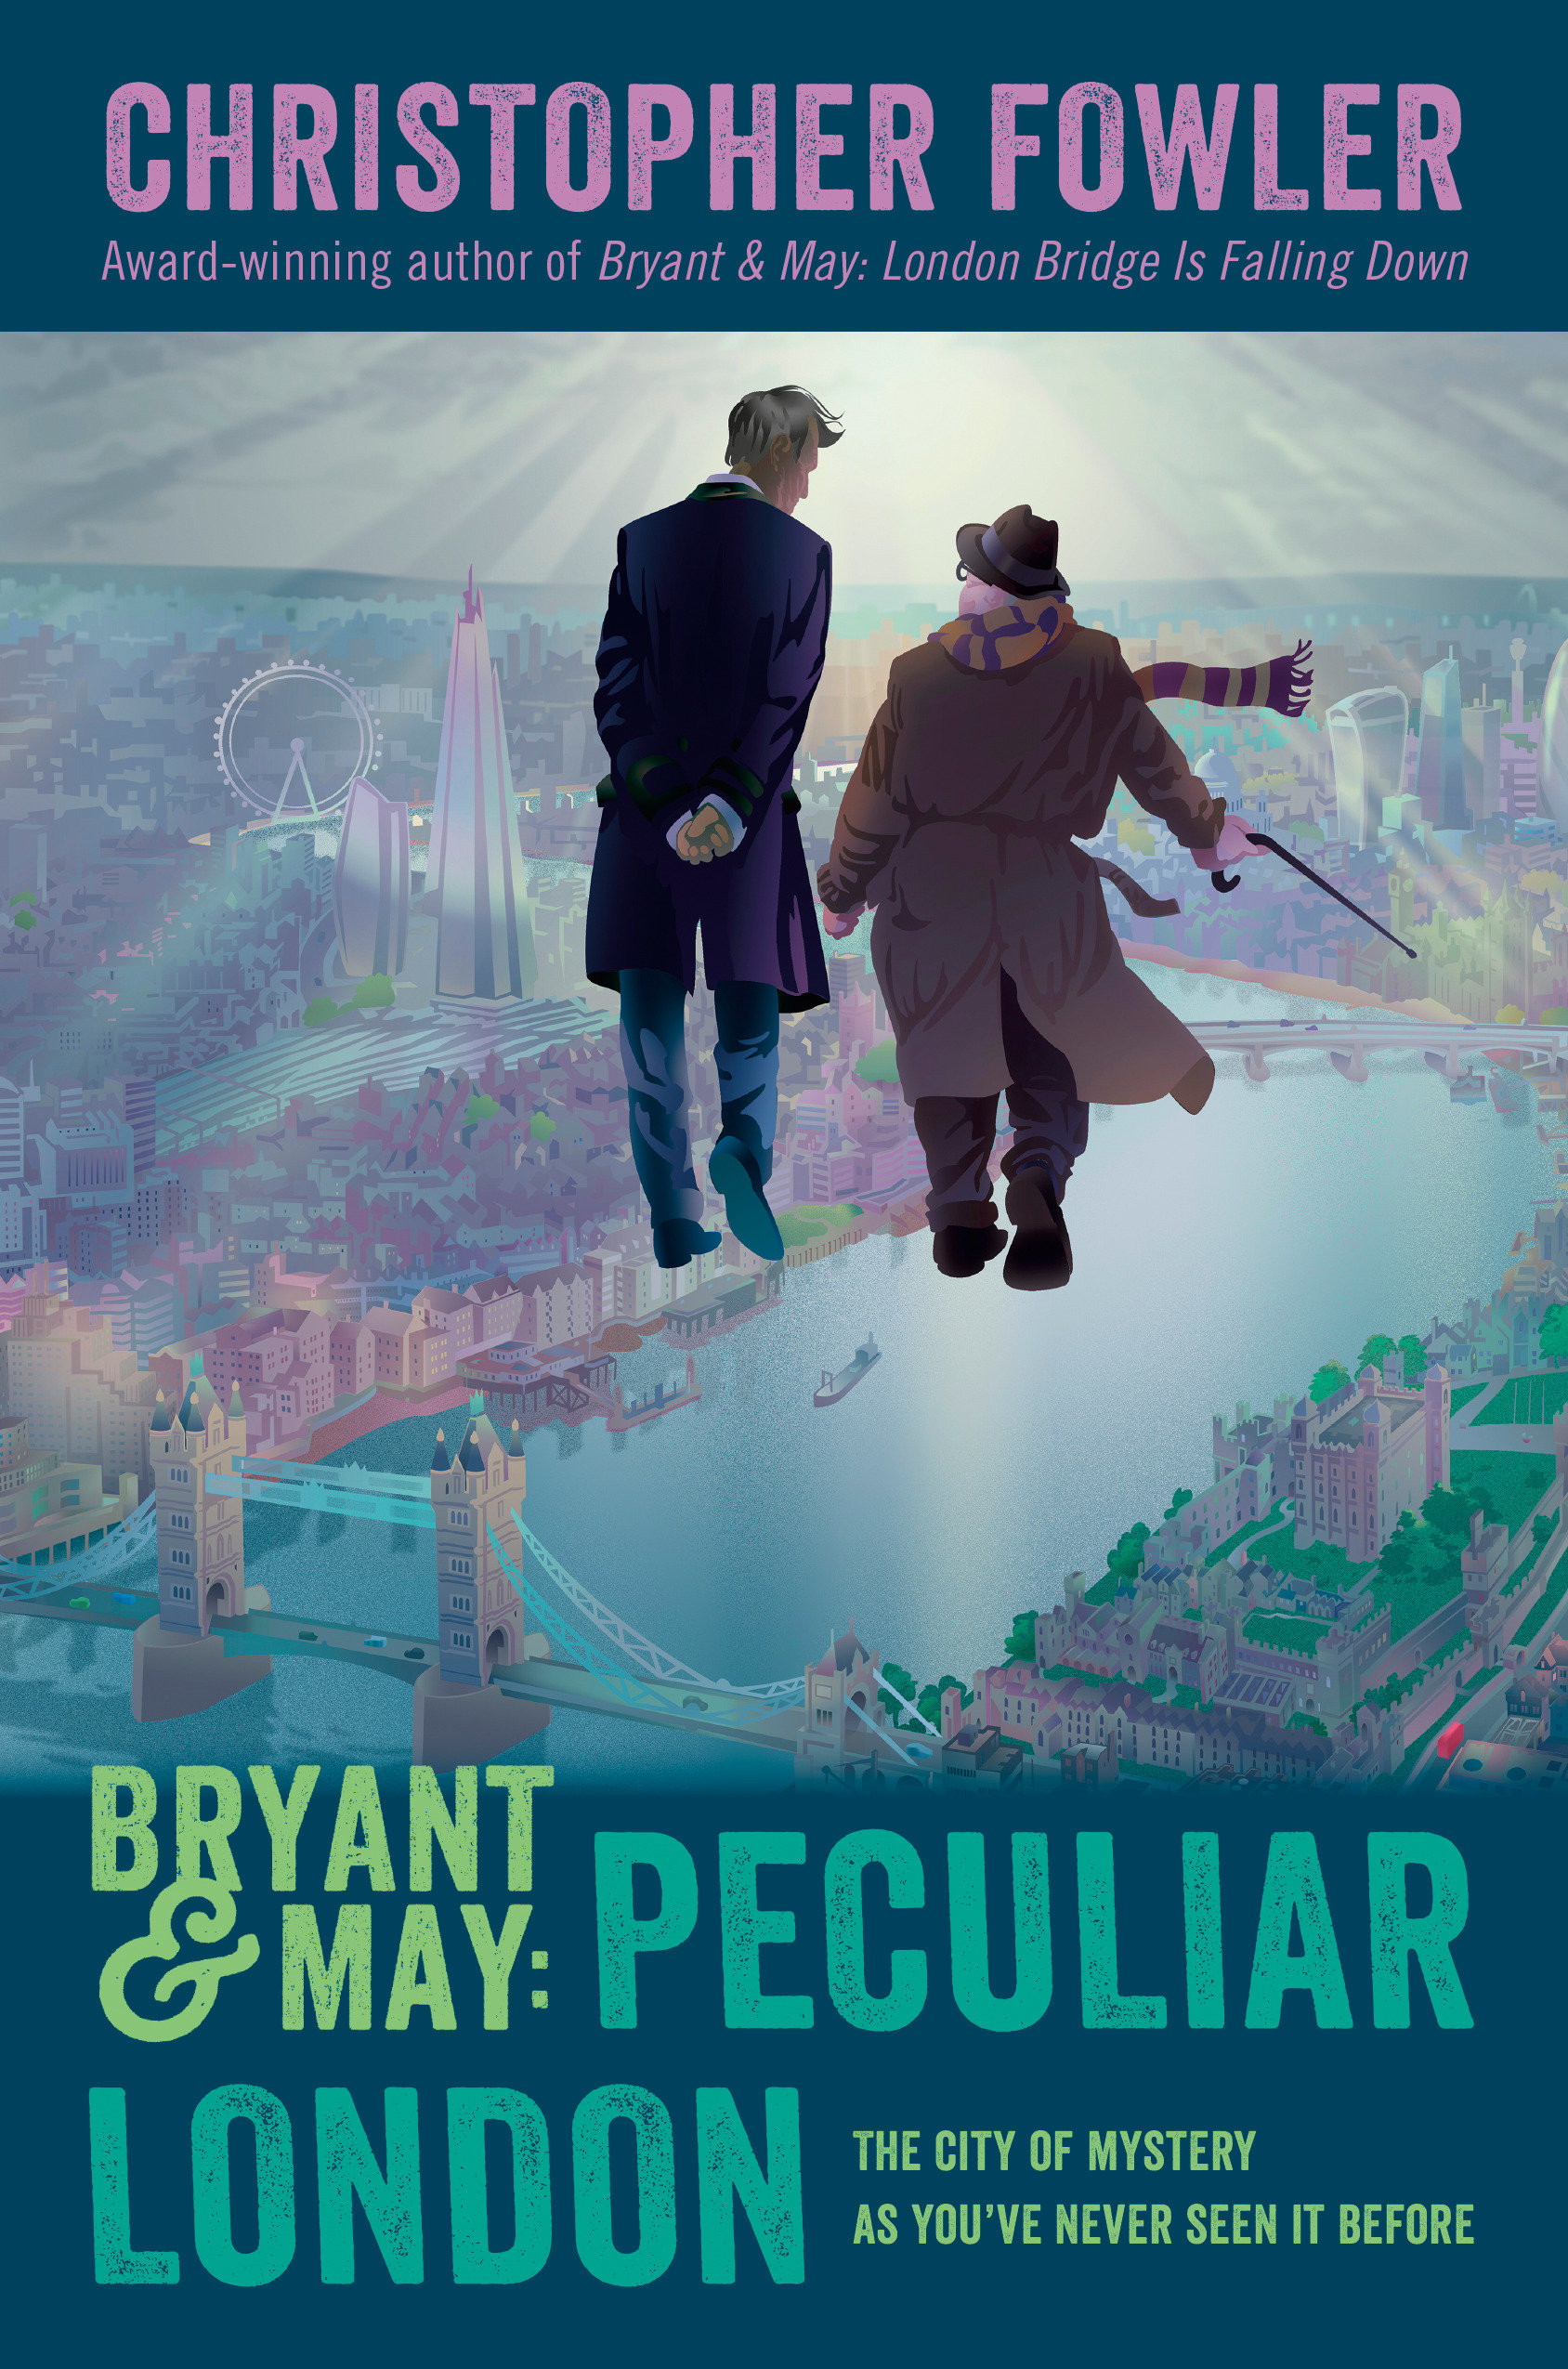 Bryant & May: Peculiar London (Hardcover Book)